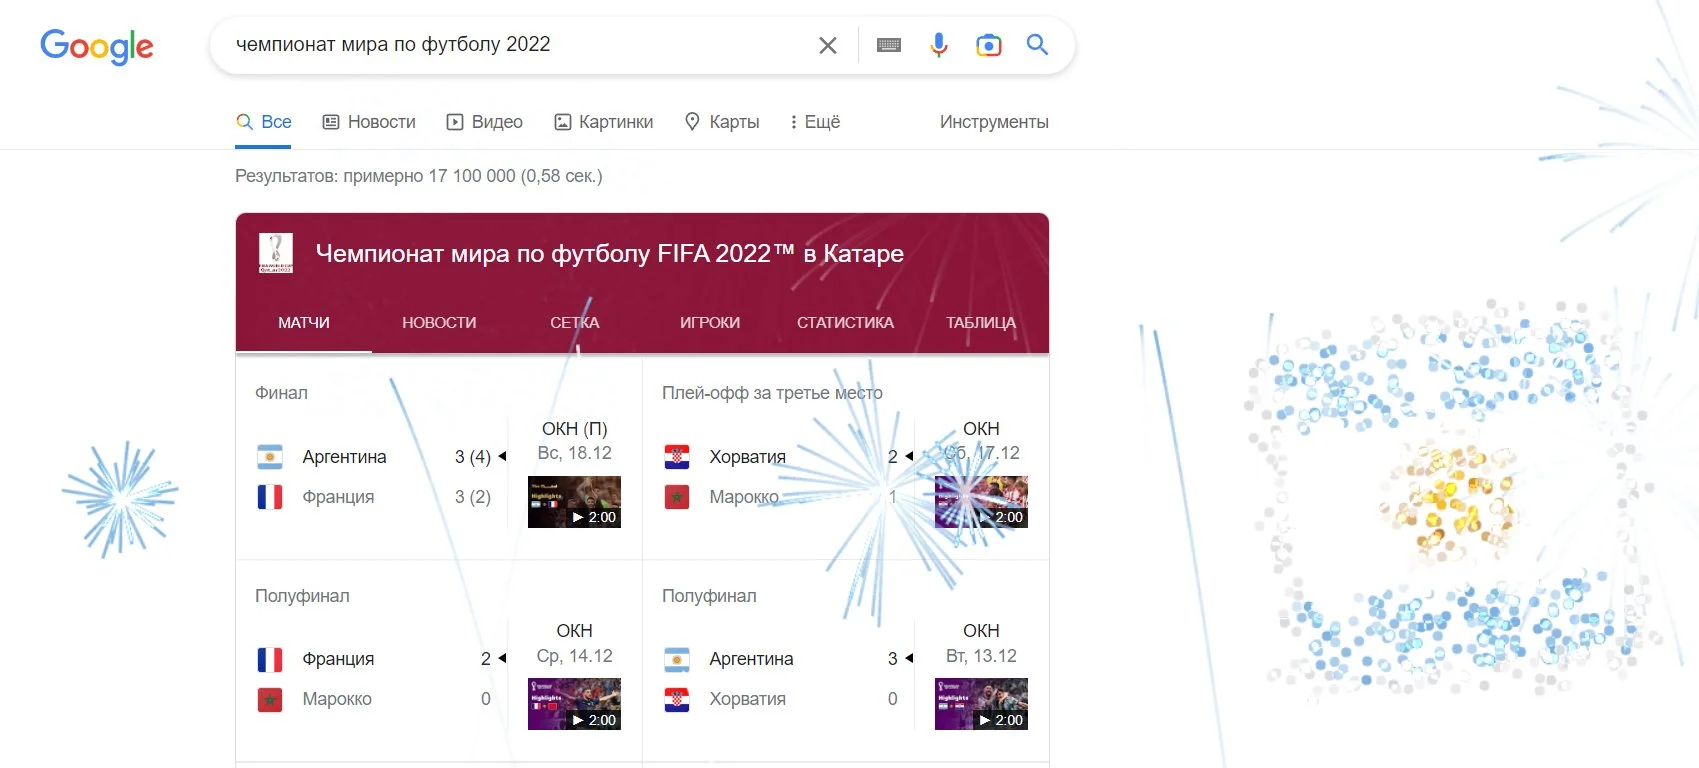 Google побил рекорд по трафику на фоне финала Чемпионата мира по футболу 2022 - фото 1